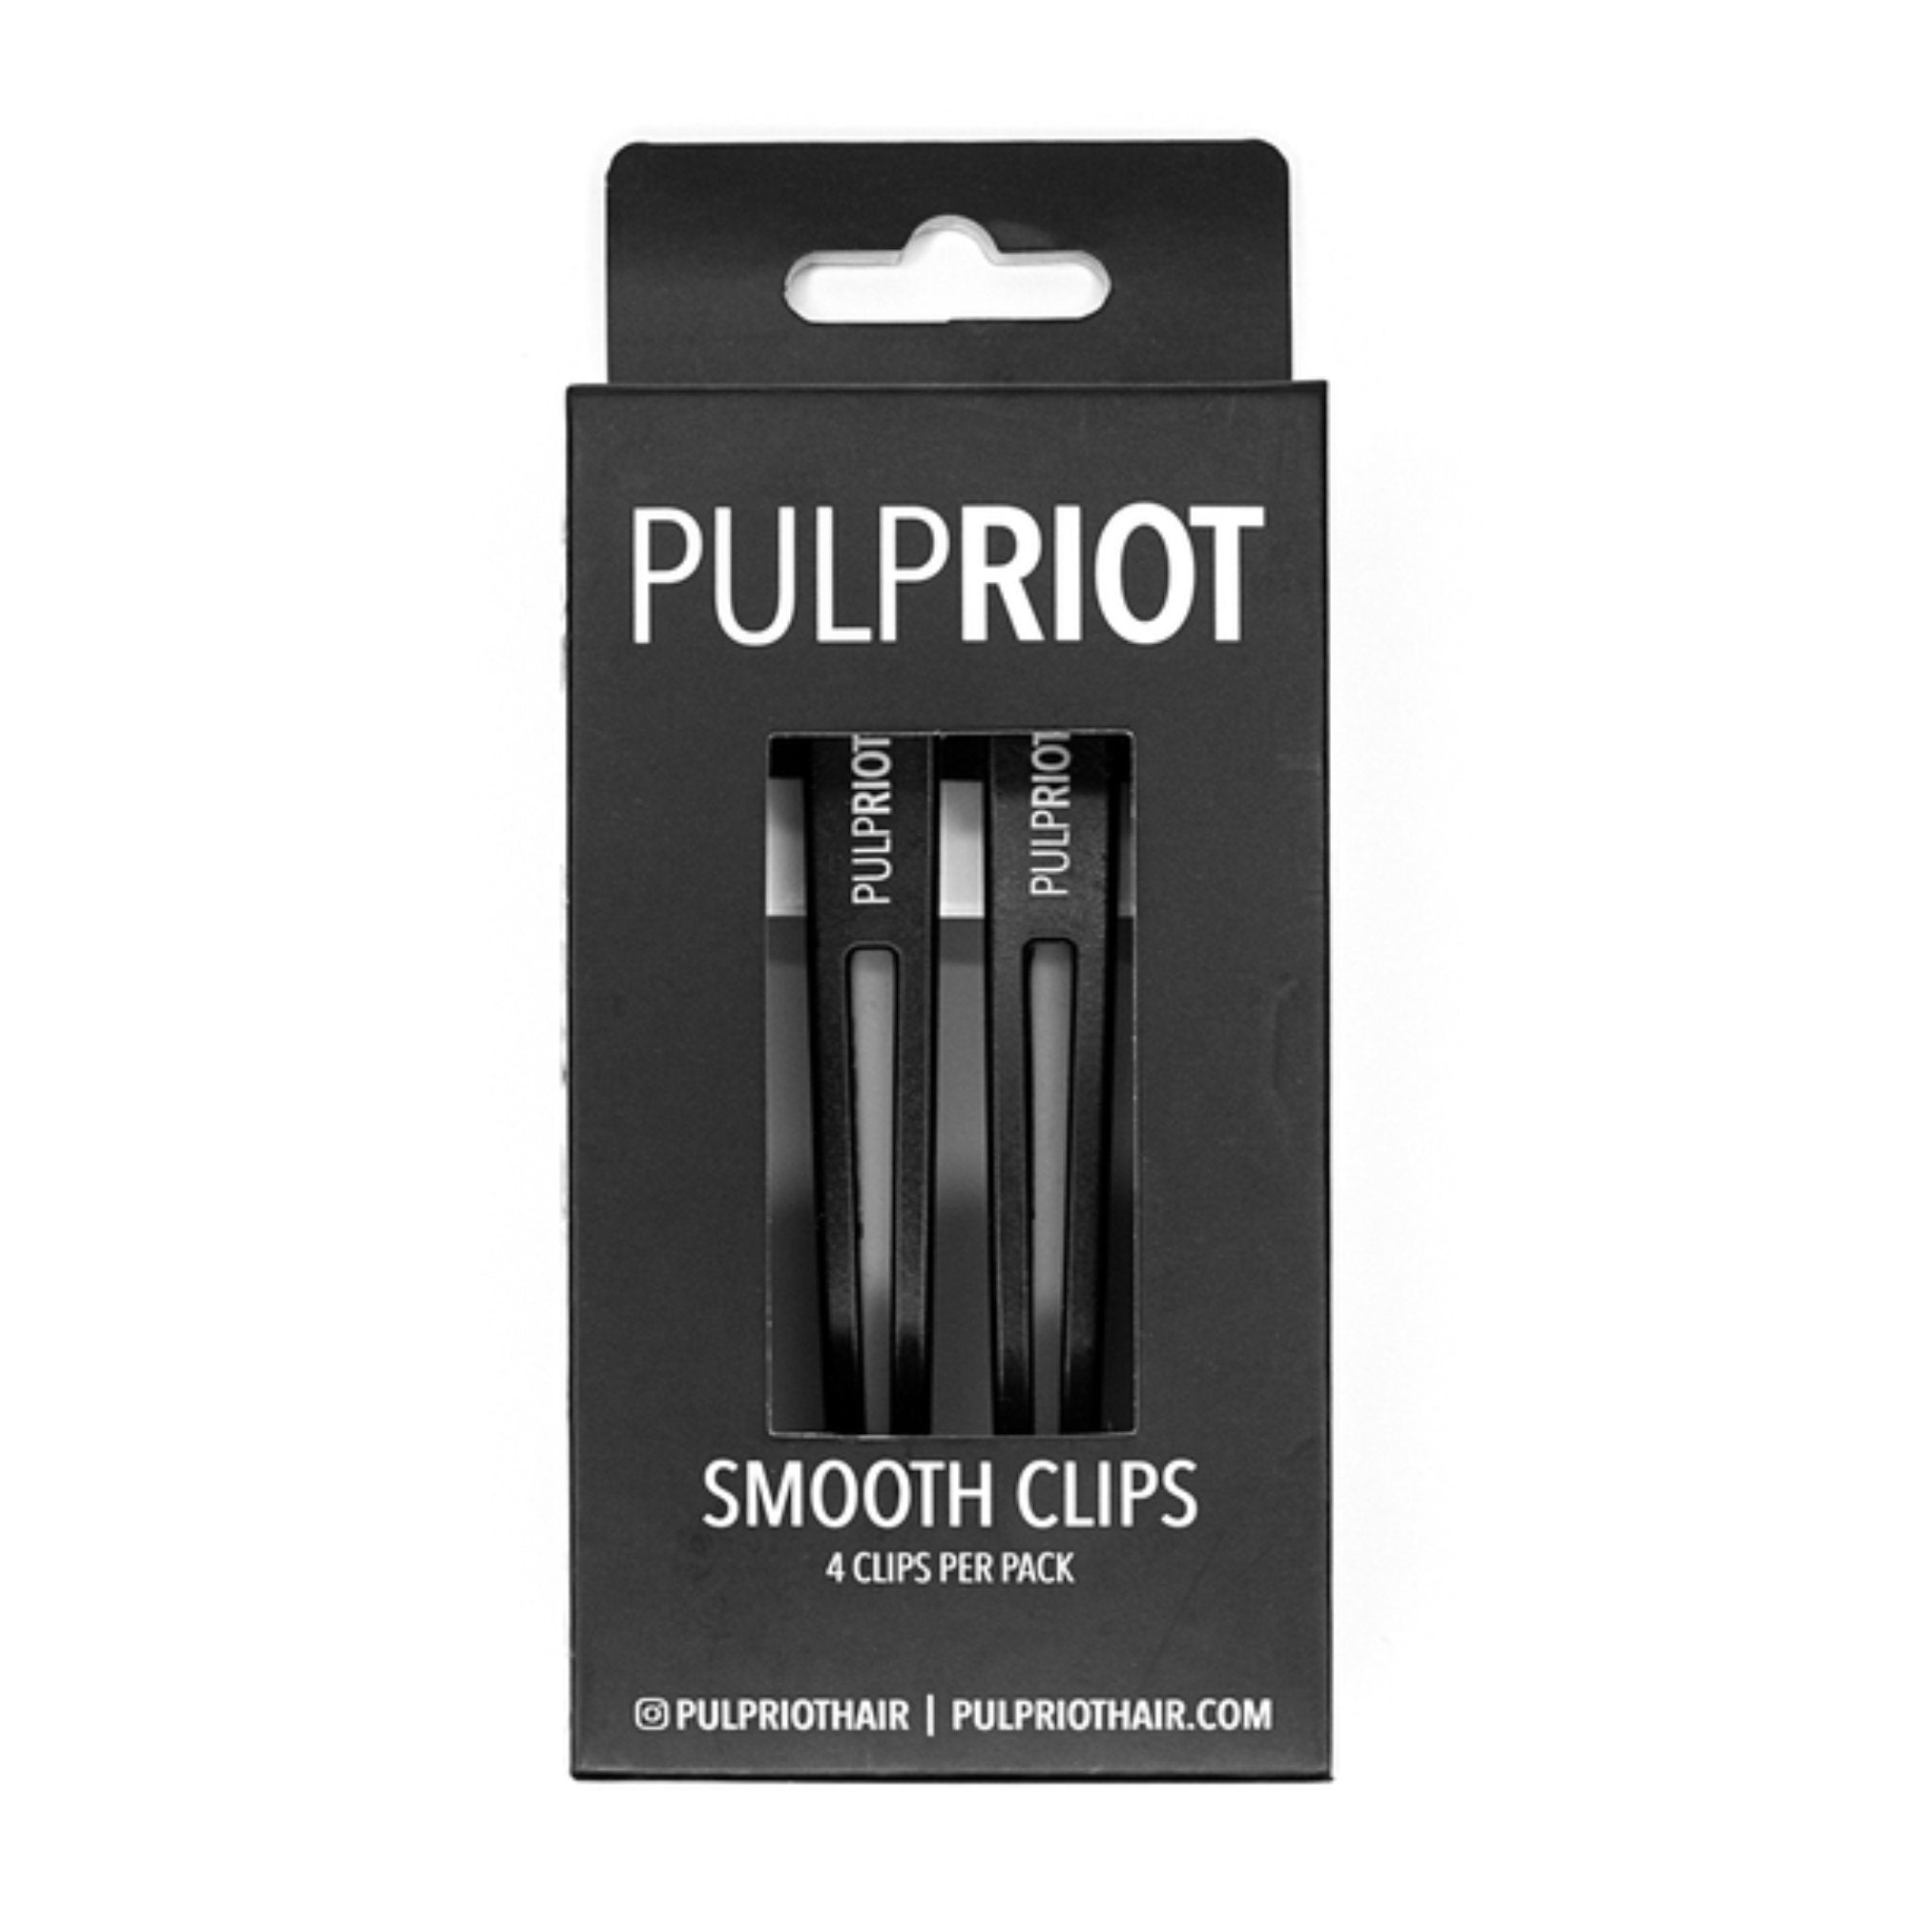 Pulp Riot. Pinces lisses noir - Concept C. Shop